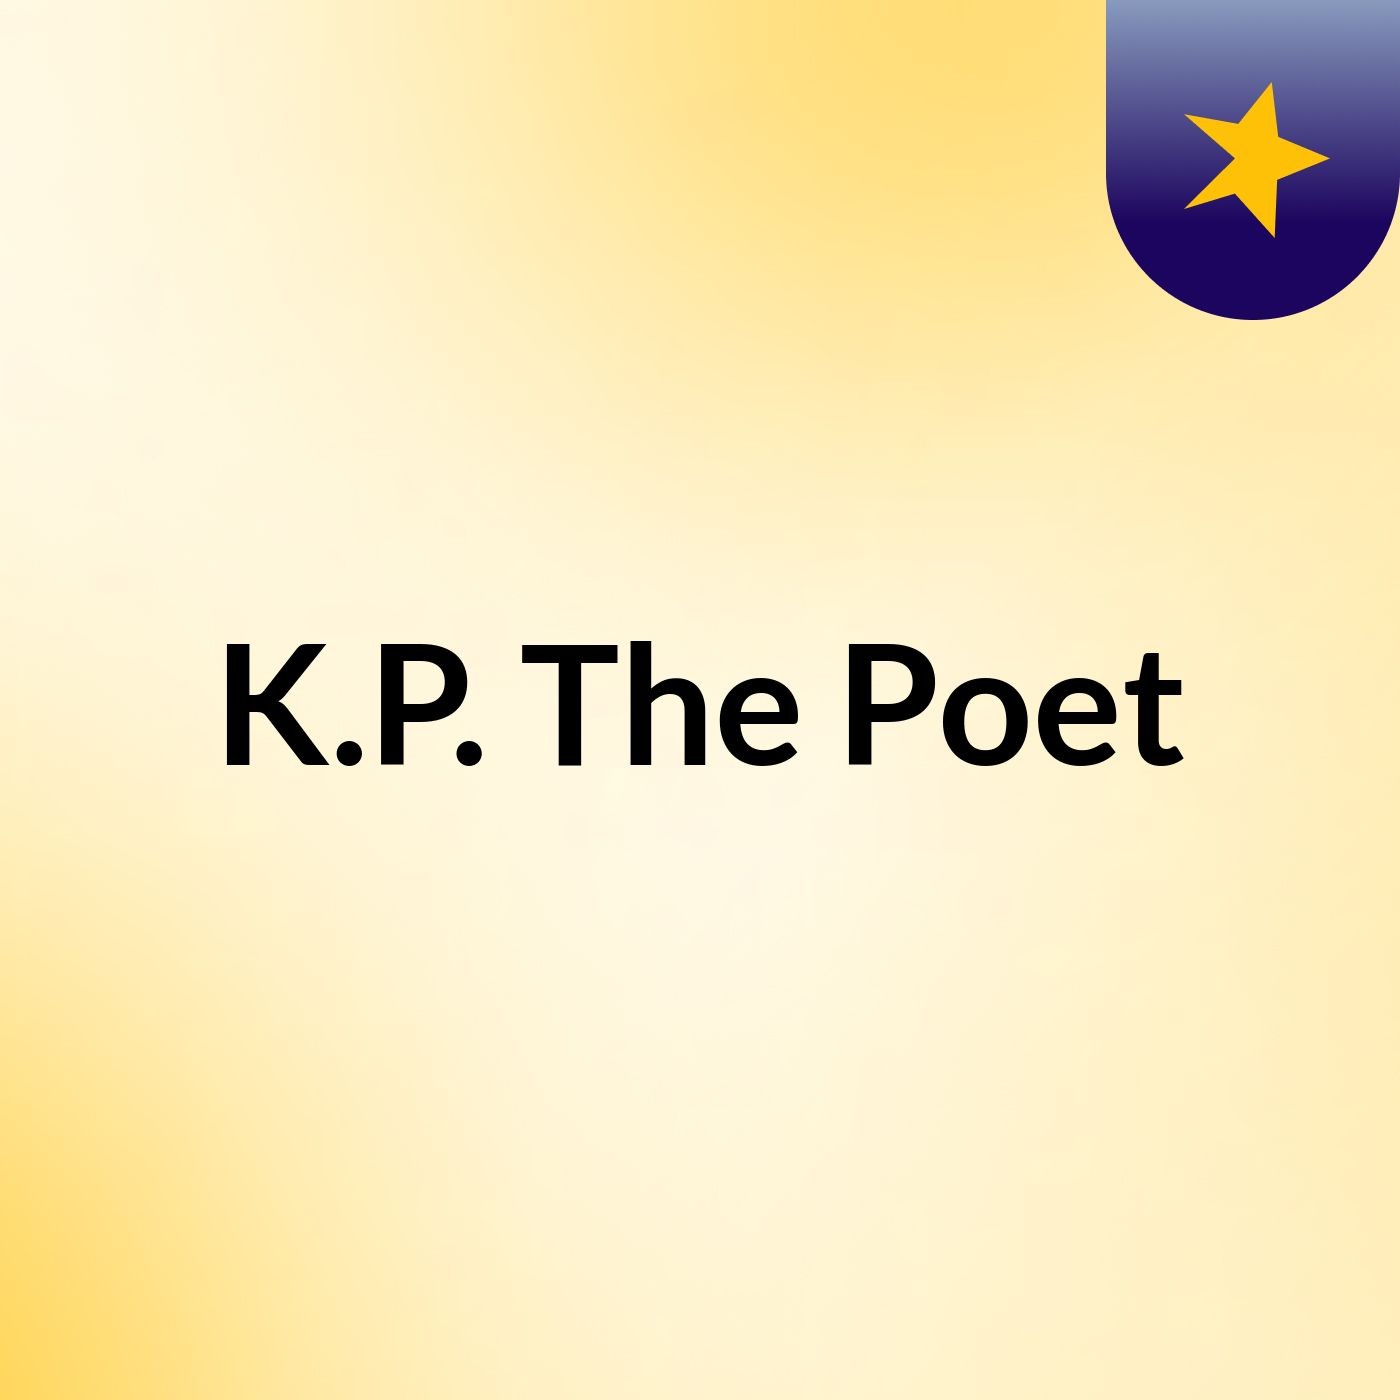 K.P. The Poet